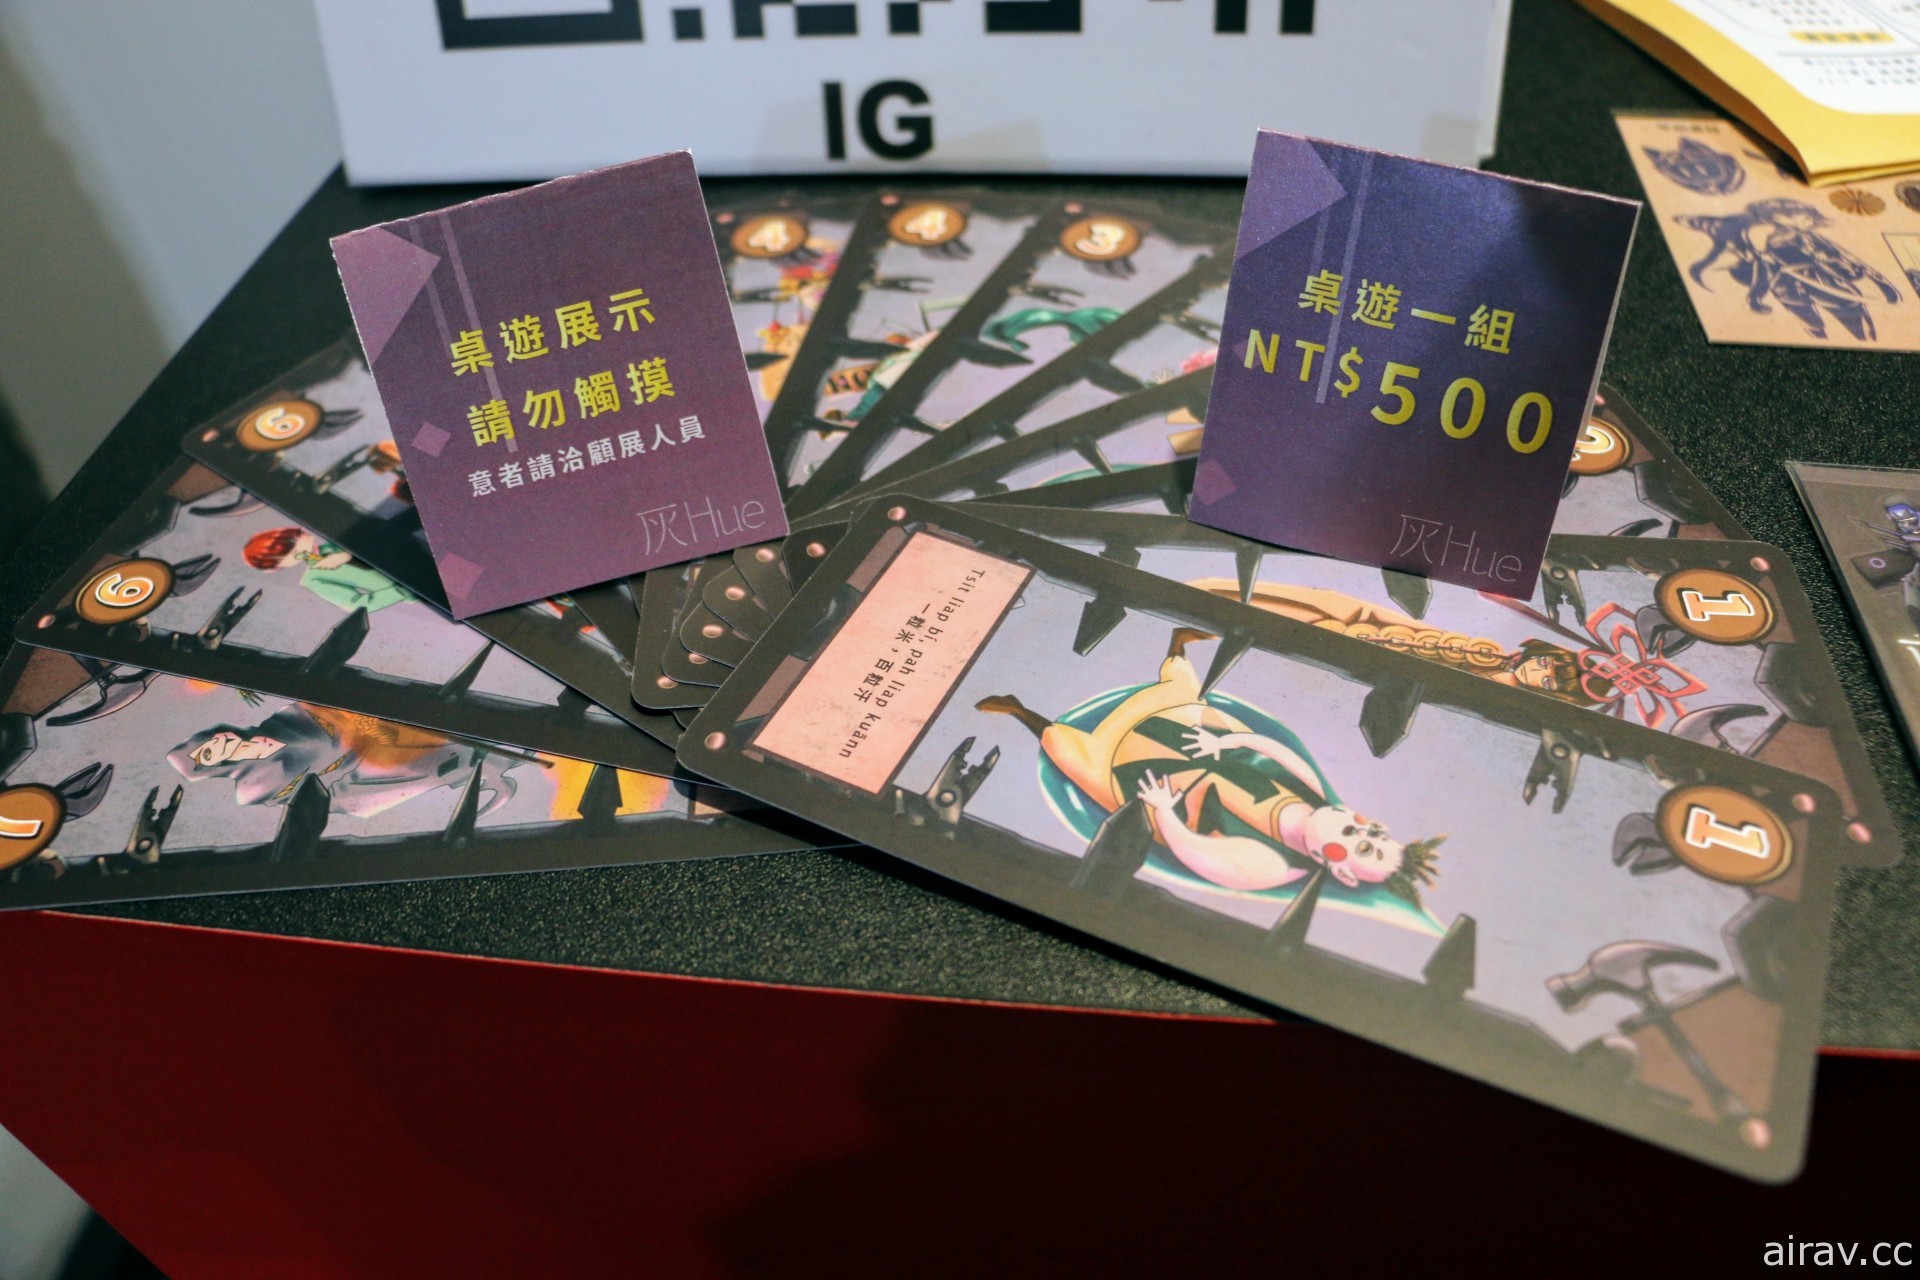 雲林科技大學學生作品《灰 HUE》將遊戲融入「臺語」推廣臺語文化價值